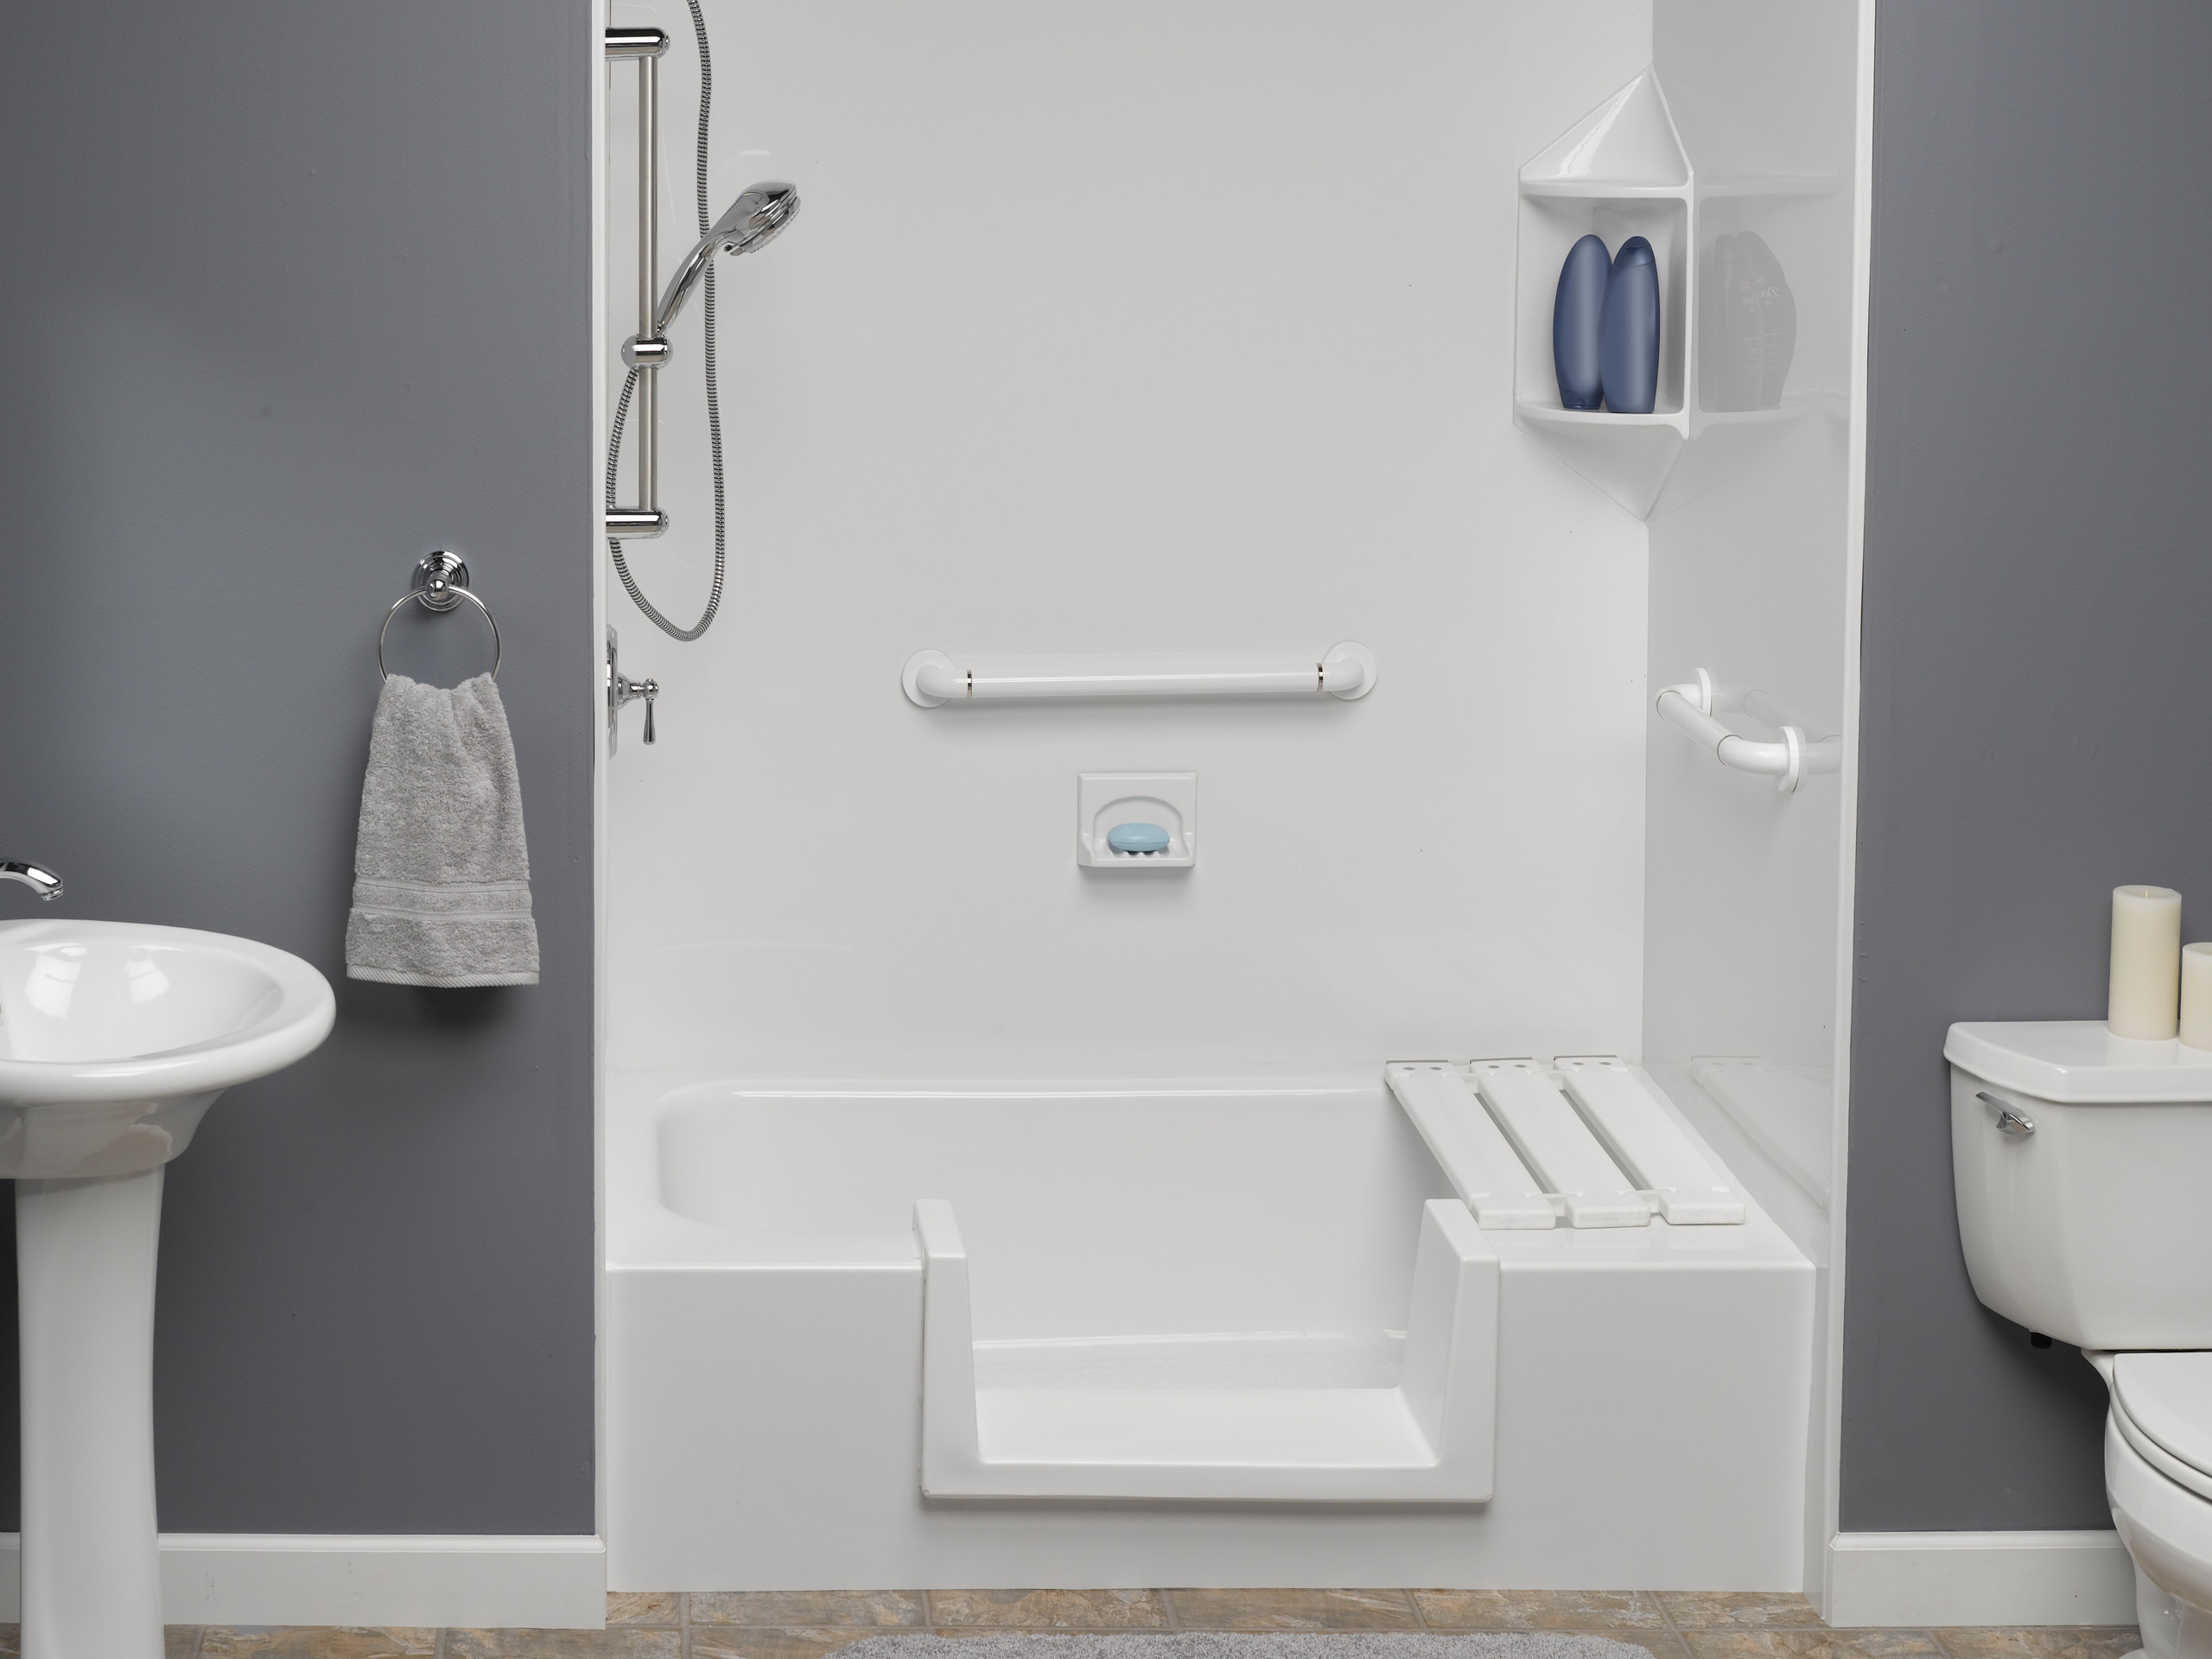 Senior Bathroom Houzz, Best Bathroom Design For Seniors